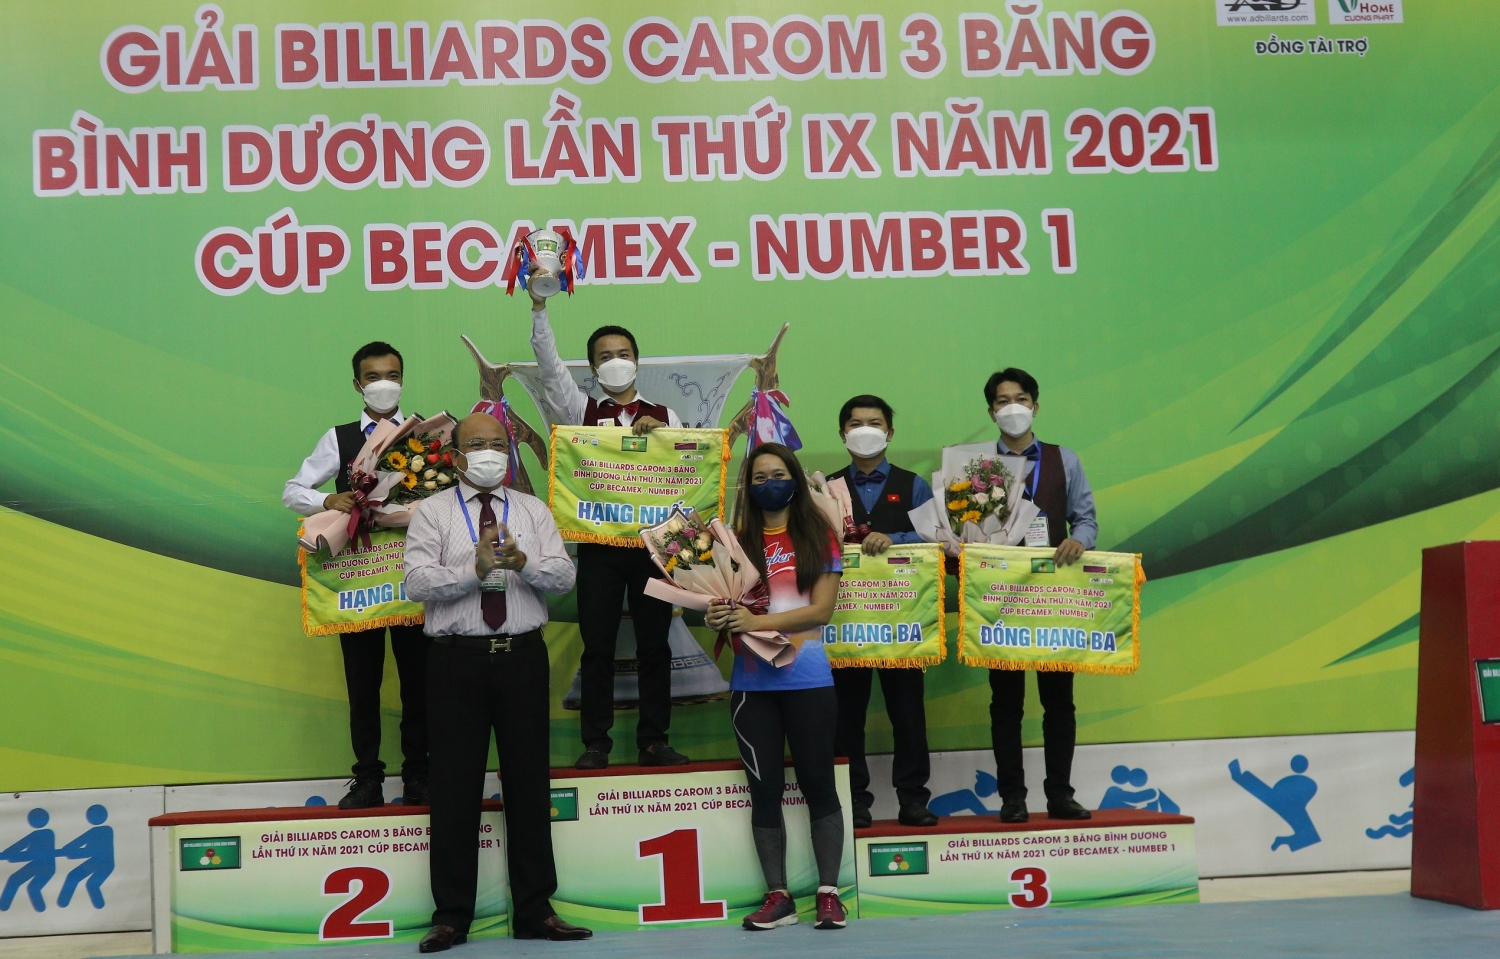 Tân vô địch của giải Billiards Carom 3 băng Bình Dương- Cup Number 1